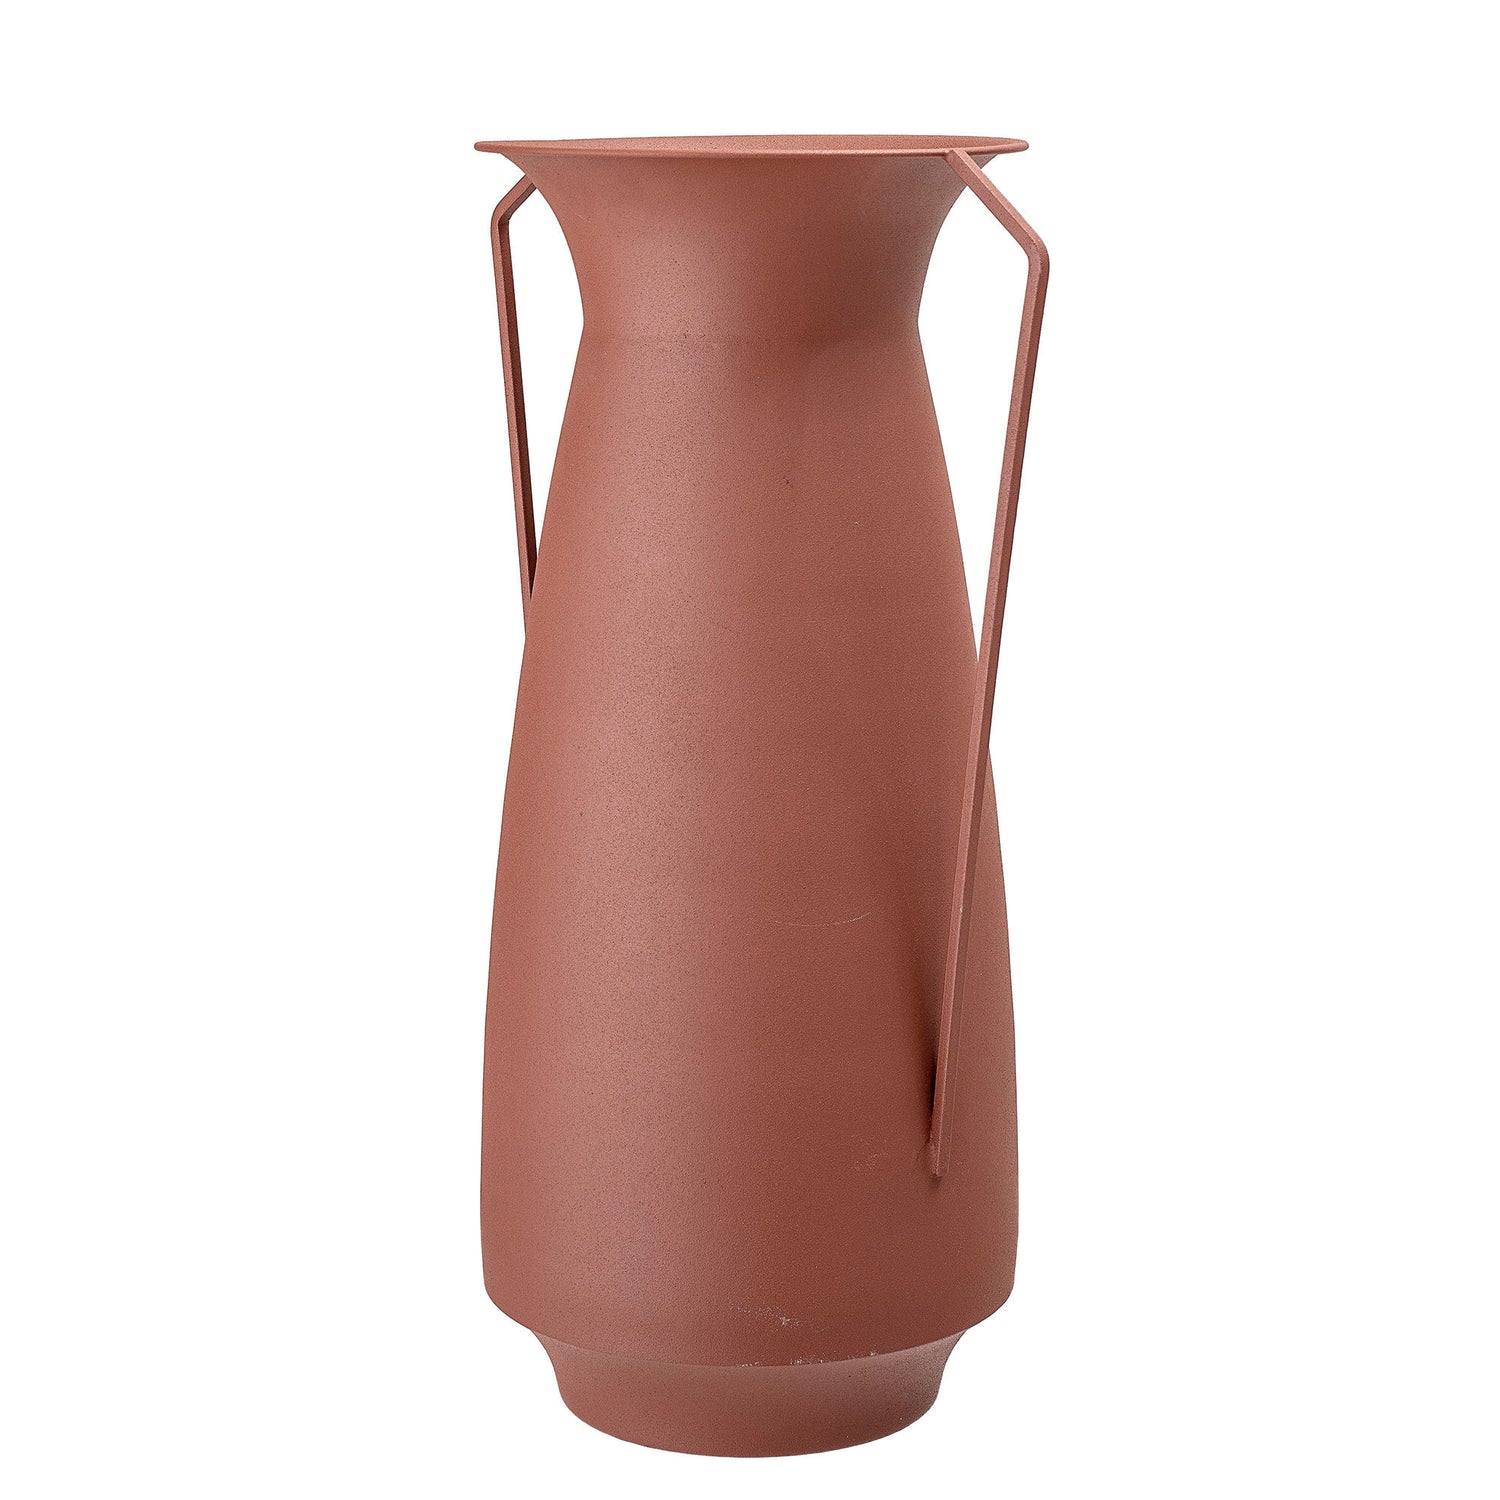 Bloomingville Rikkegro Vase, Braun, Metall